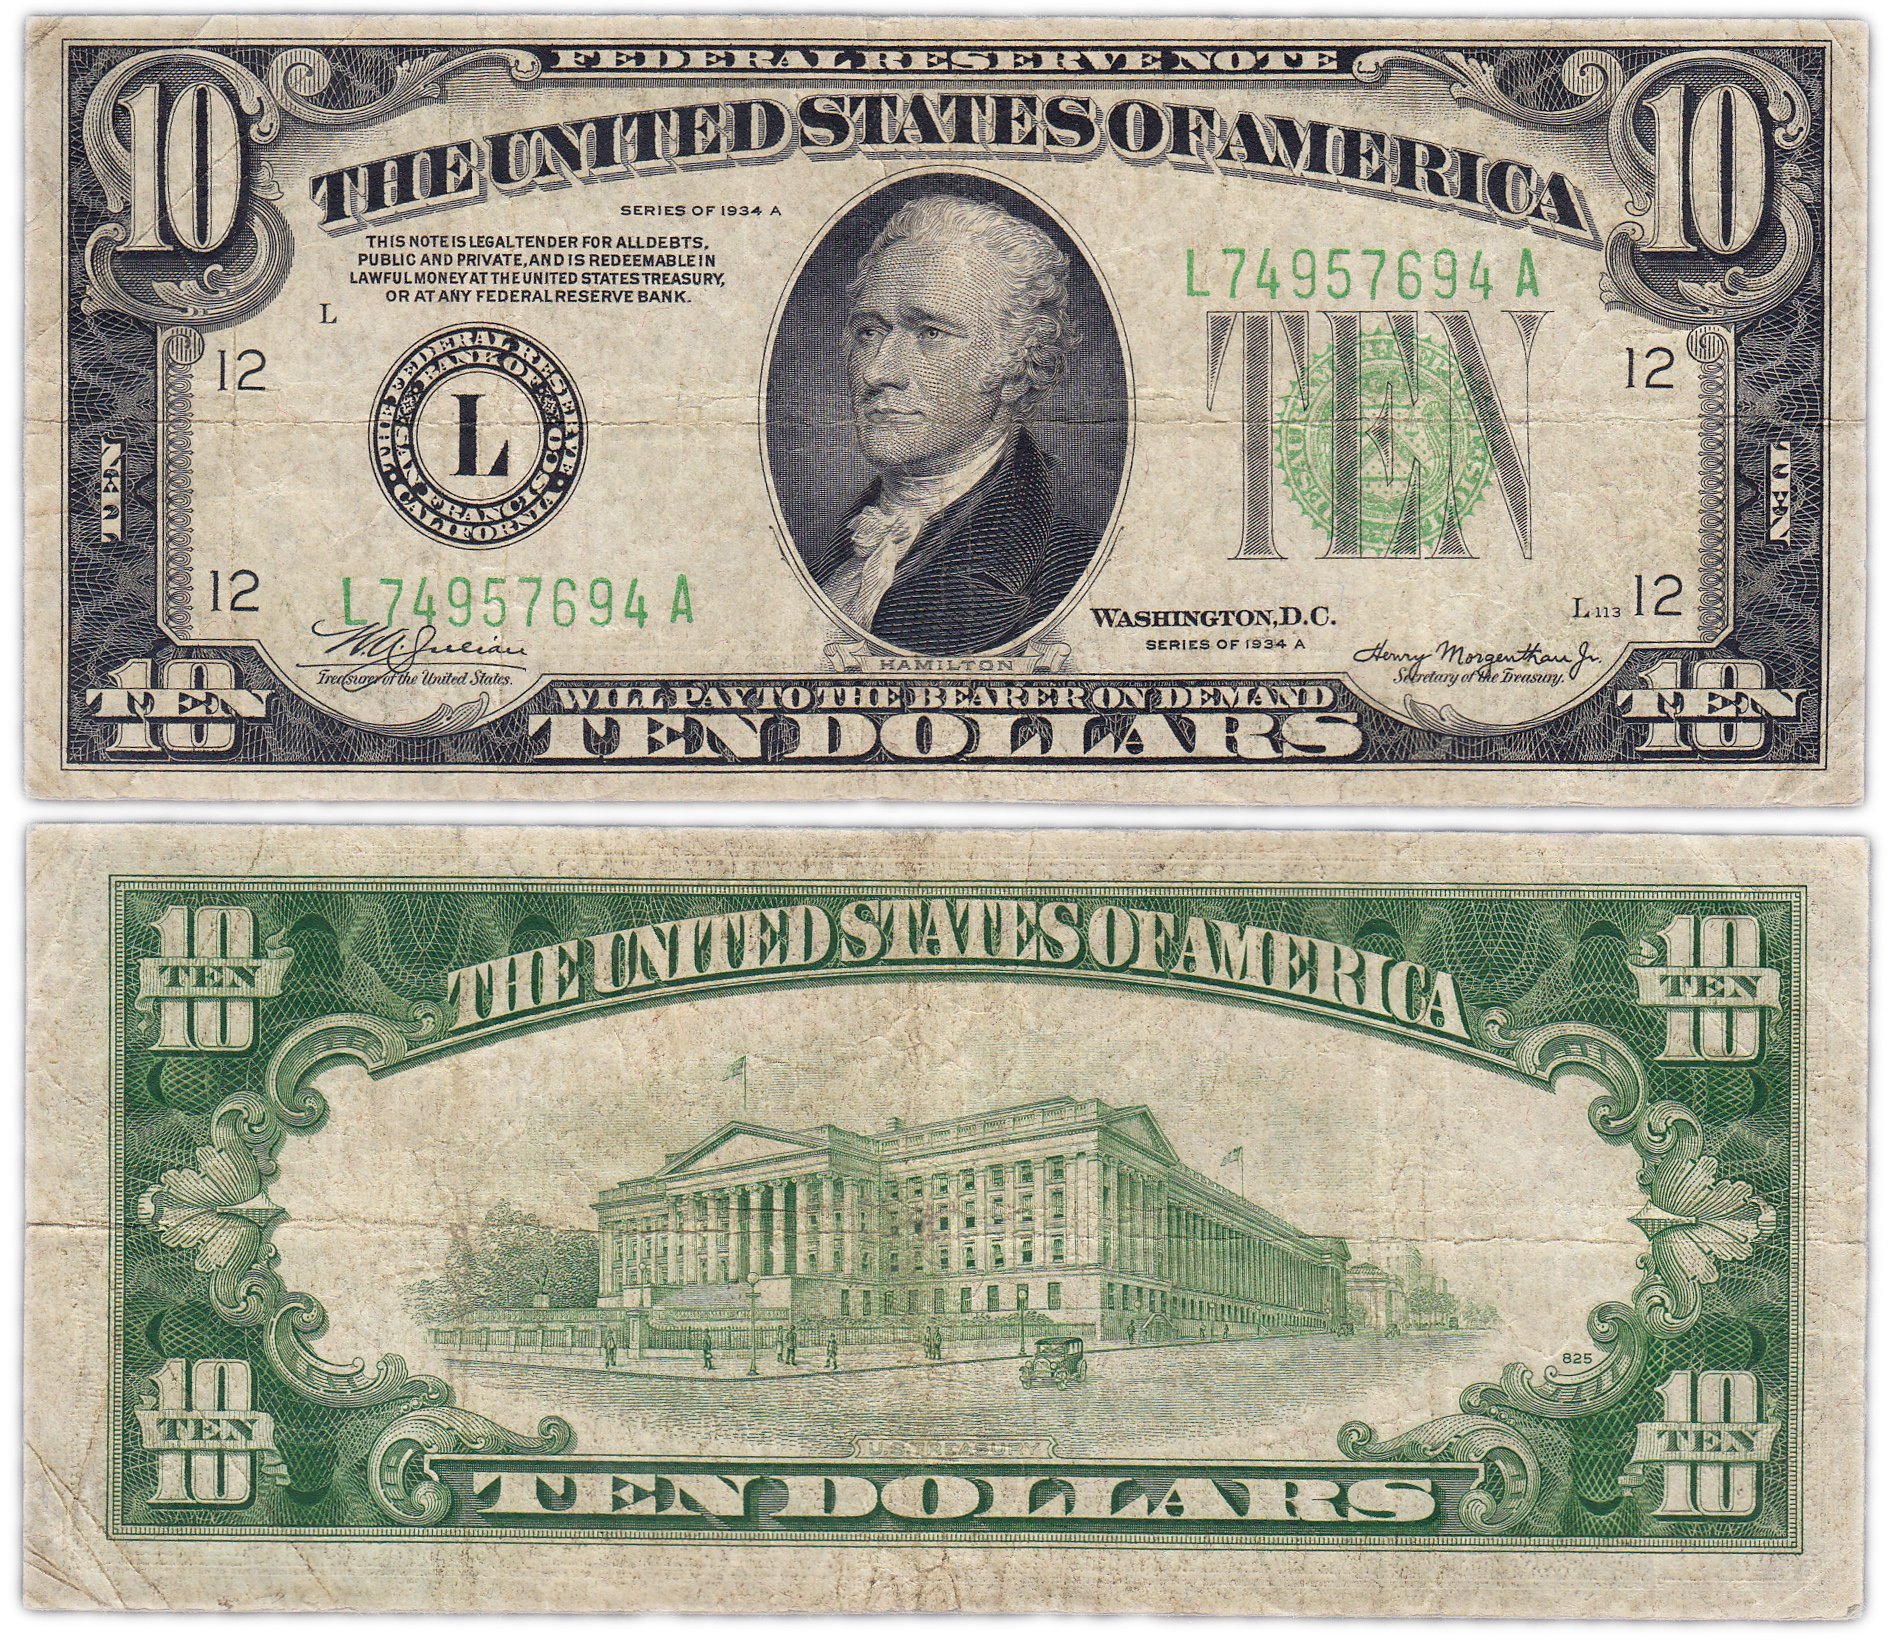 Доллары номинал купюр с фото